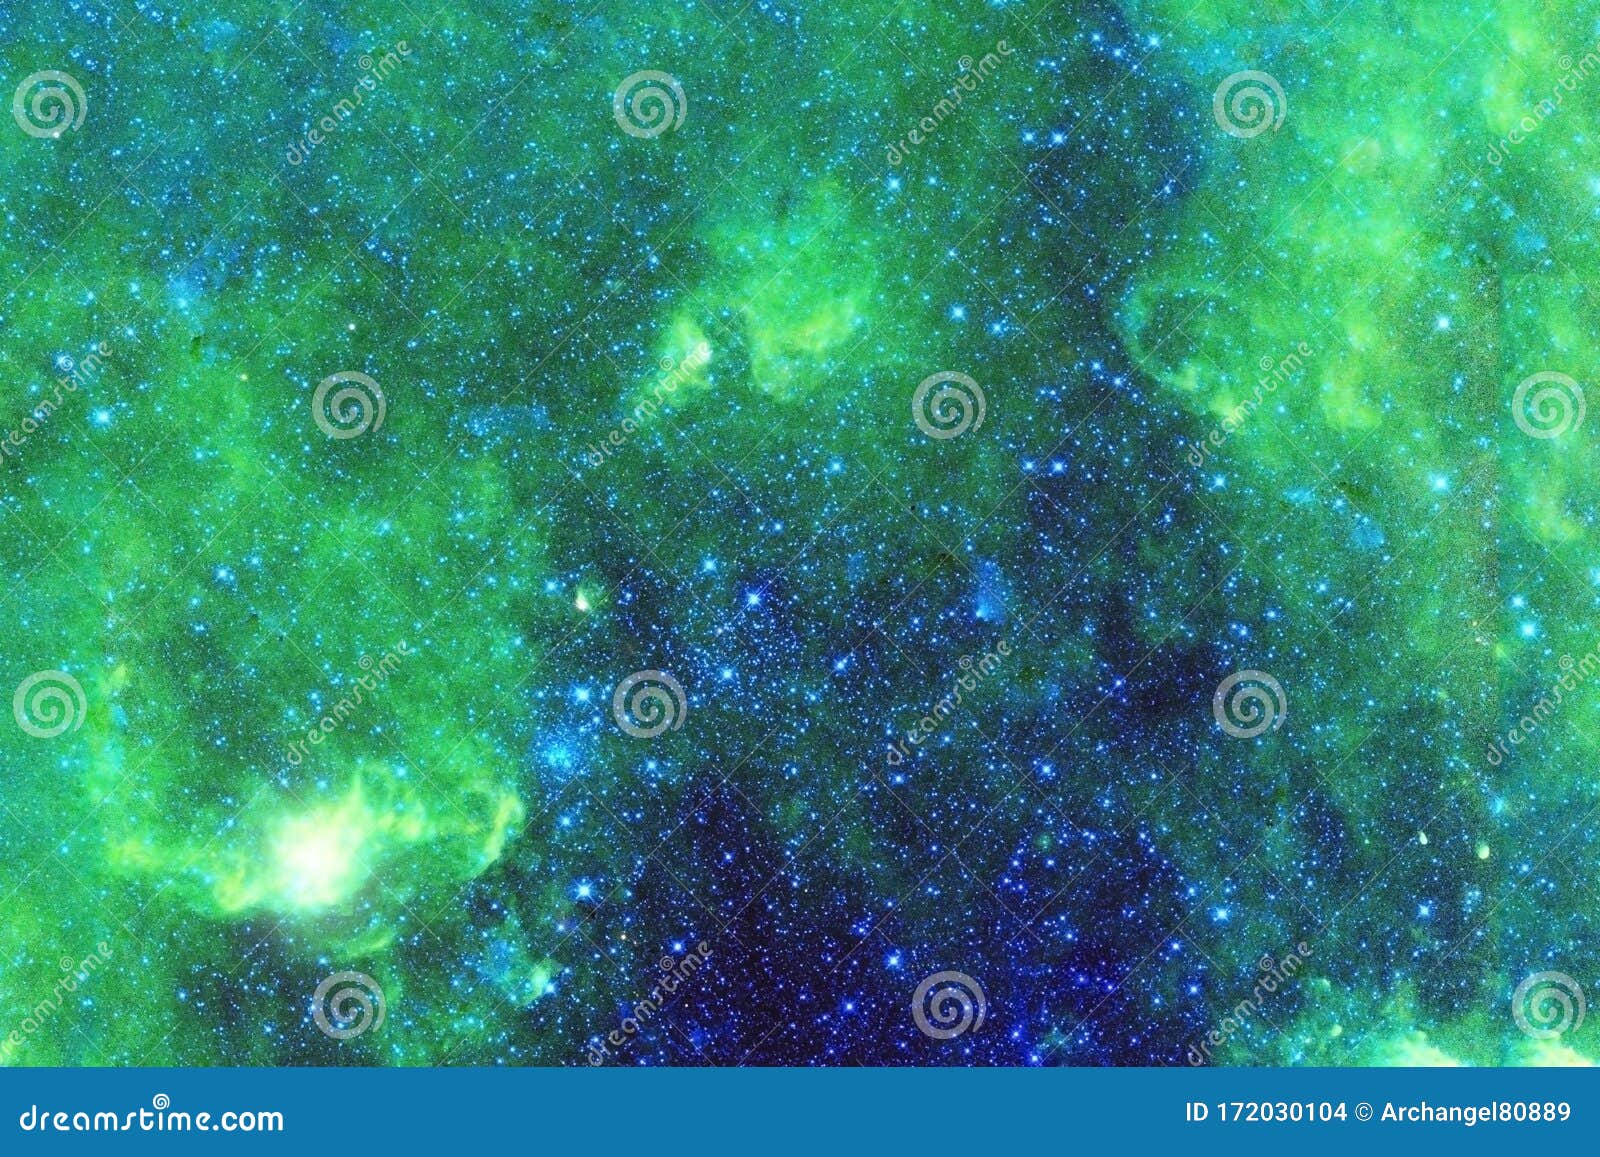 Buc tranh Thiên Hà xanh lấp lánh với những ngôi sao rực rỡ sẽ khiến bạn cảm thấy đang sống trong một vũ trụ thực sự. Những hình ảnh đặc biệt này mang lại niềm vui và niềm đam mê cho những người yêu thích khoảng trời đầy bí ẩn với sự hỗ trợ bởi các chi tiết kỹ thuật số đầy màu sắc và sinh động.